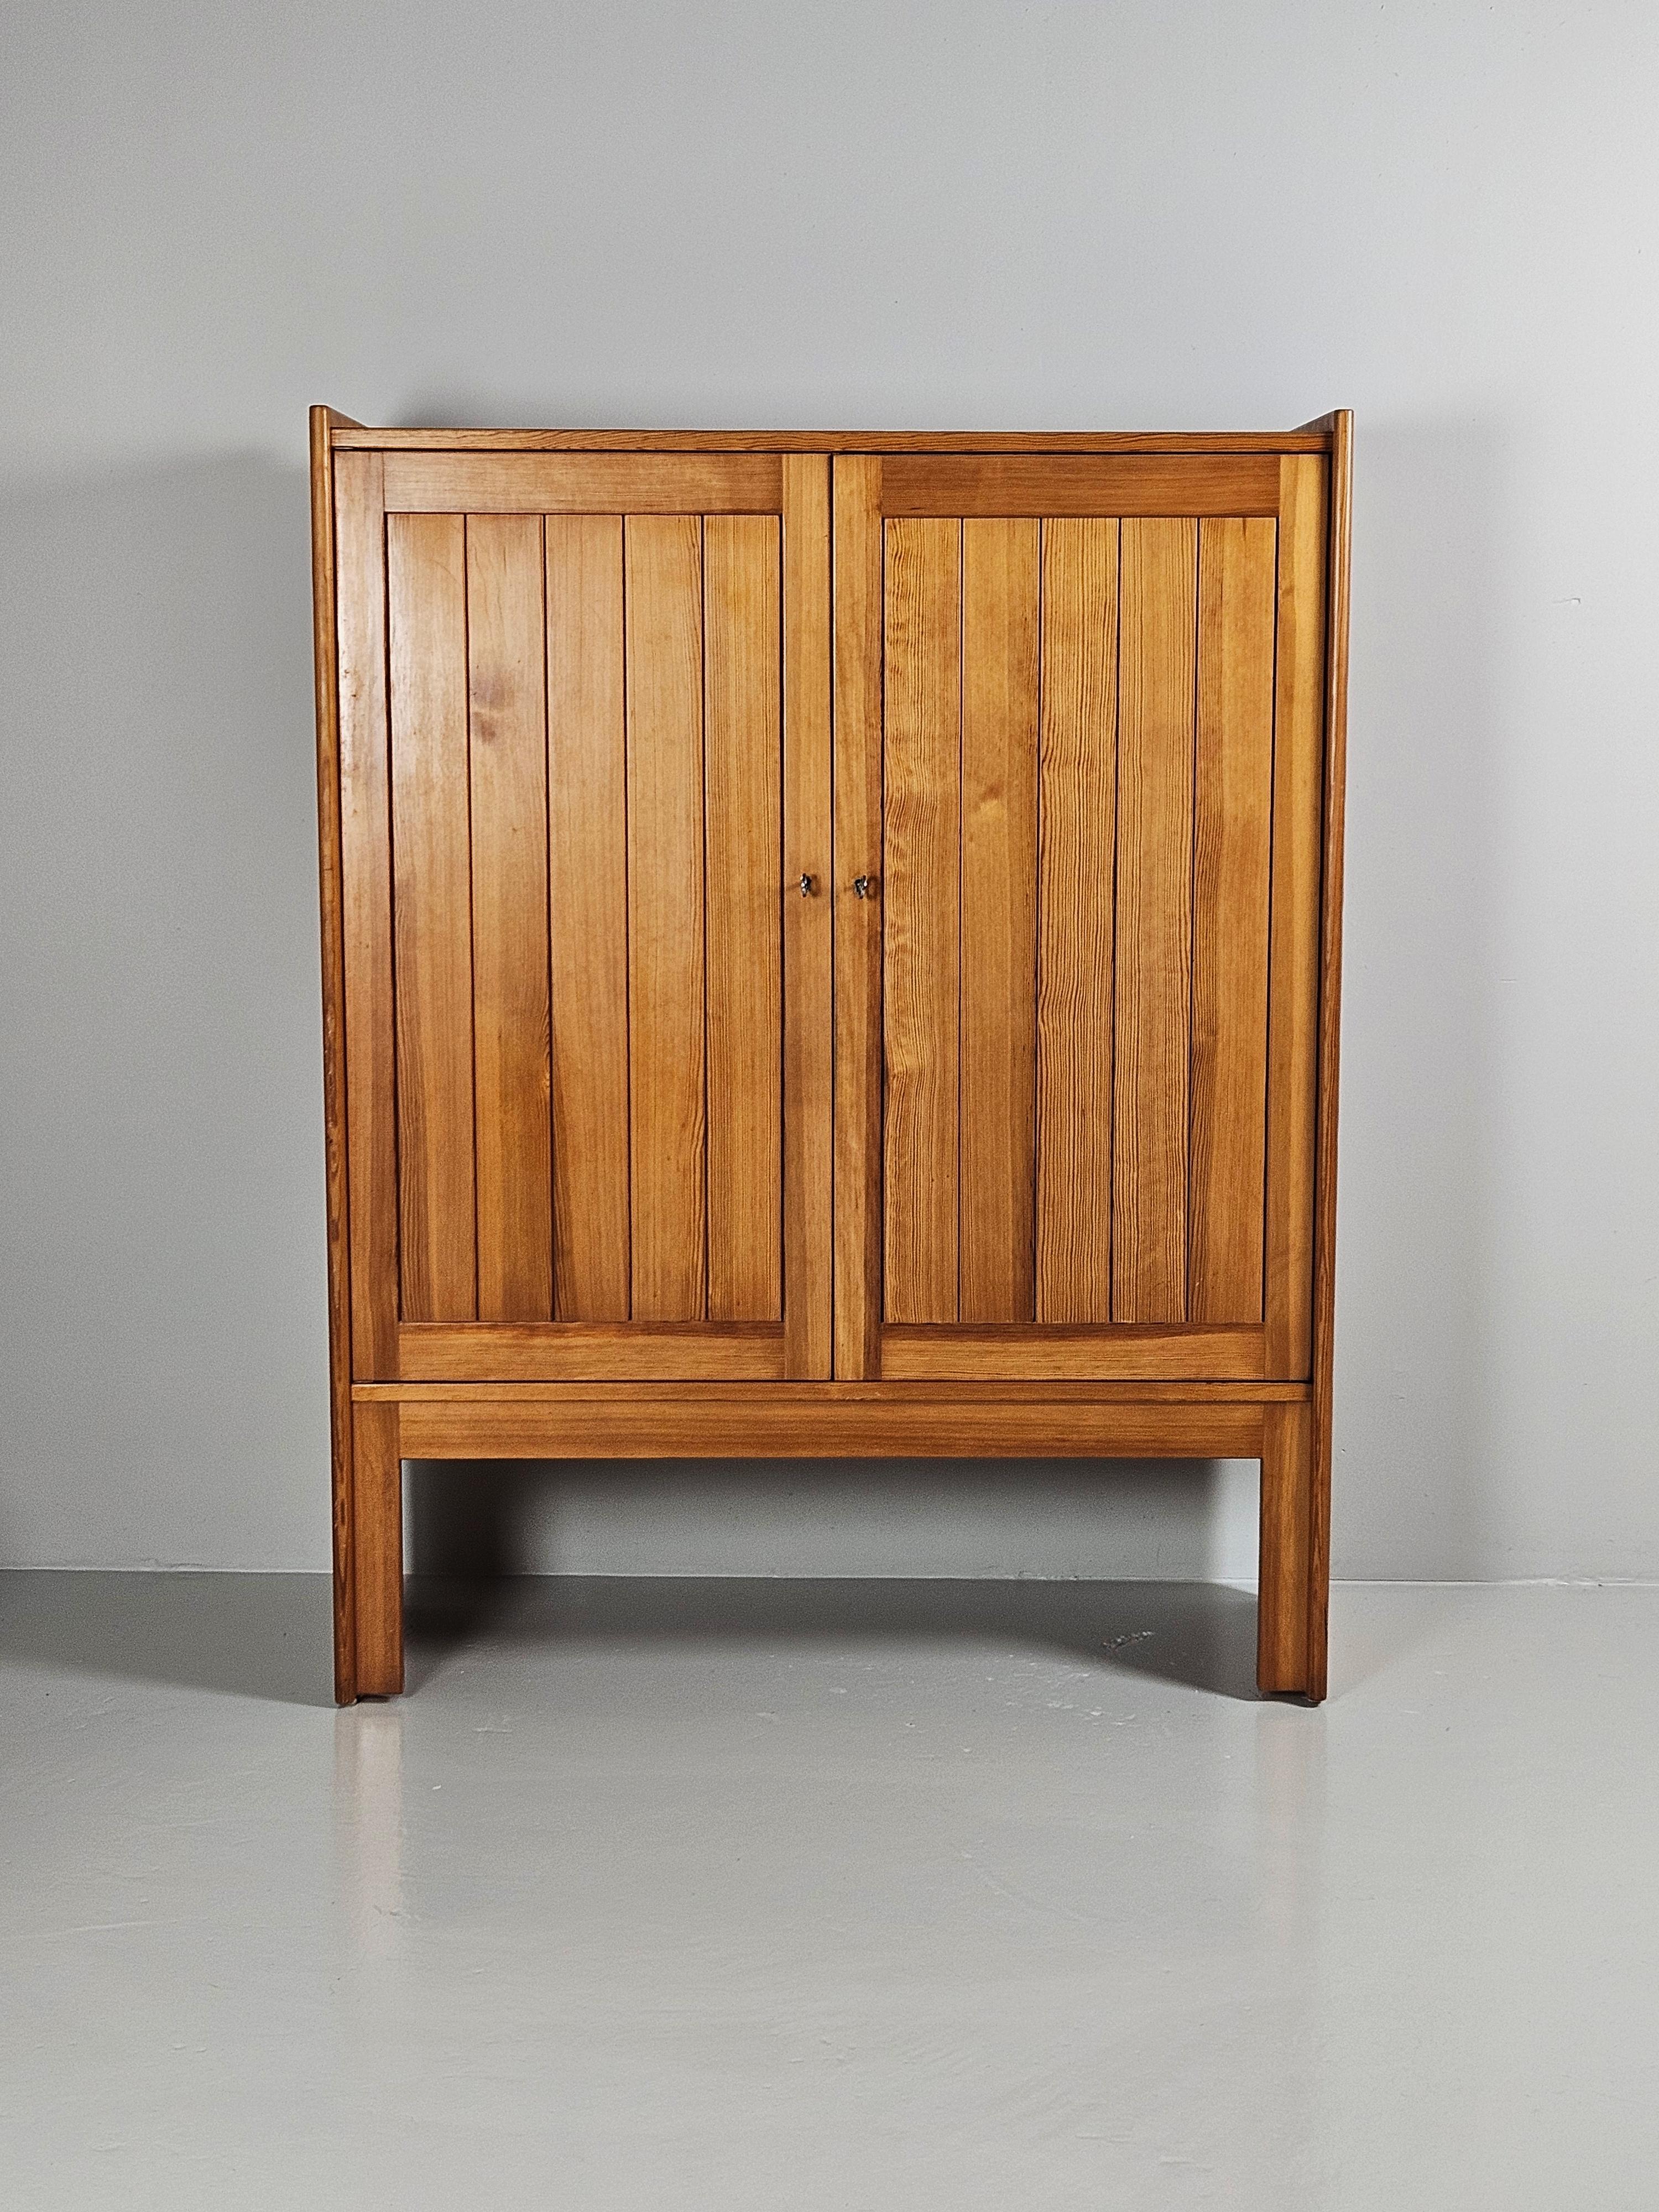 Très rare meuble haut conçu par Børge Mogensen dans les années 1960.

En 1961, Mogensen a conçu des meubles en pin destinés à sa propre maison d'été. La série a ensuite été produite par la société suédoise Karl Andersson & söner et a été baptisée